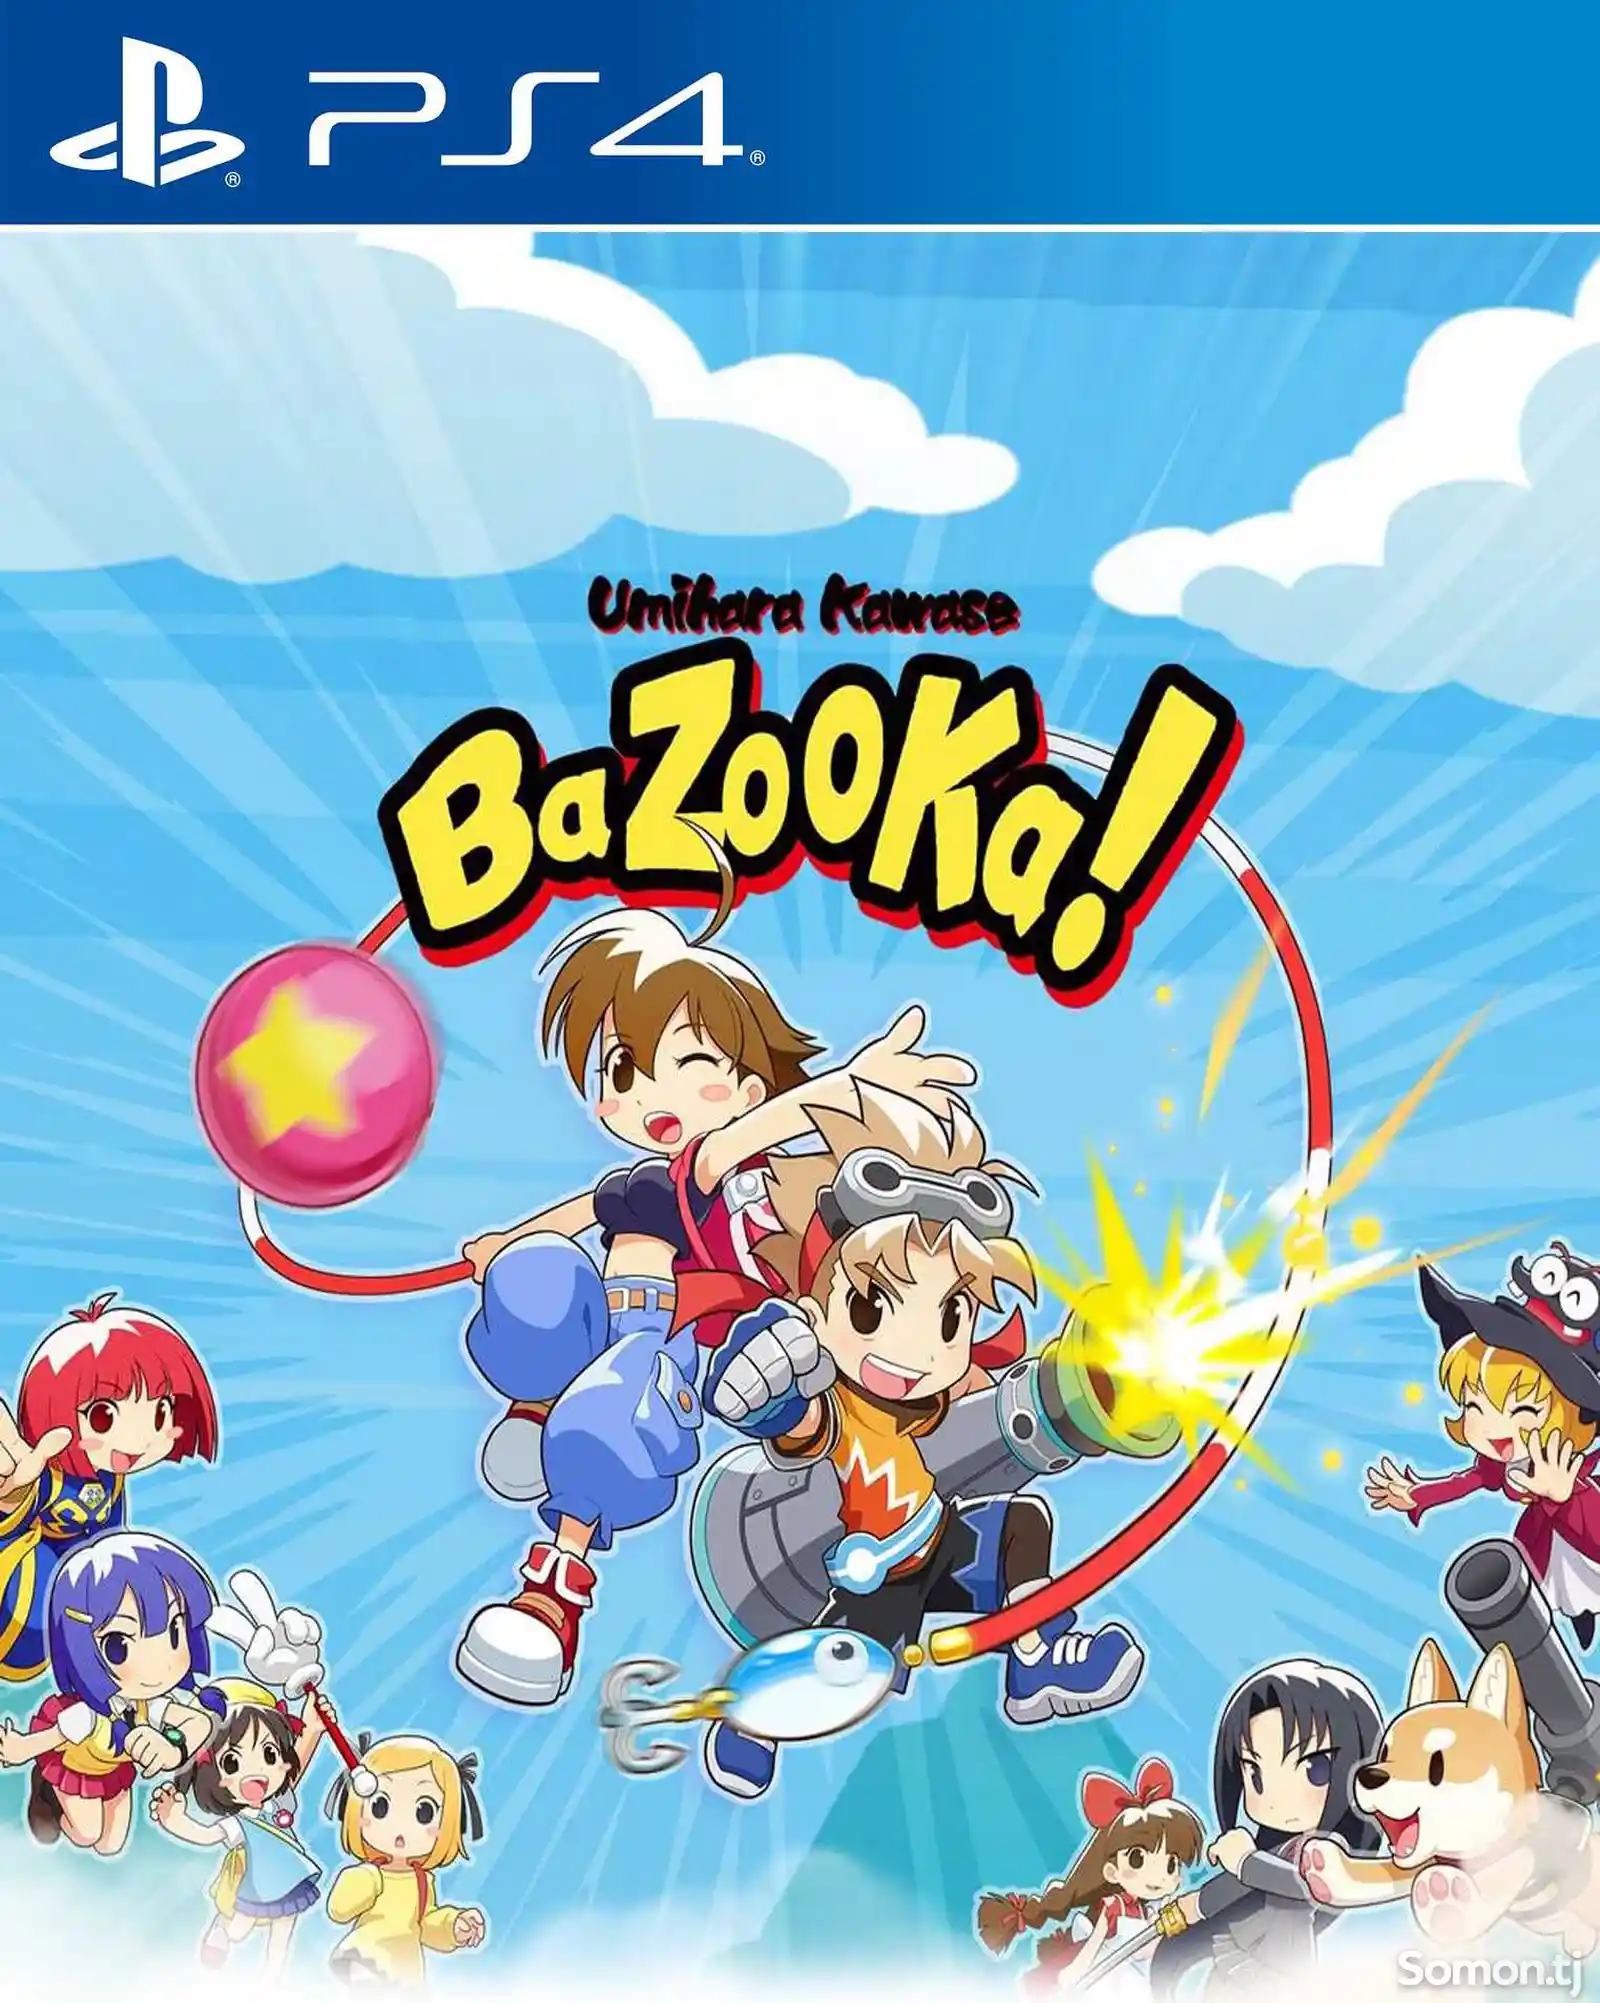 Игра Umihara kawase bazooka для PS-4 / 5.05 / 6.72 / 7.02 / 7.55 / 9.00 /-1